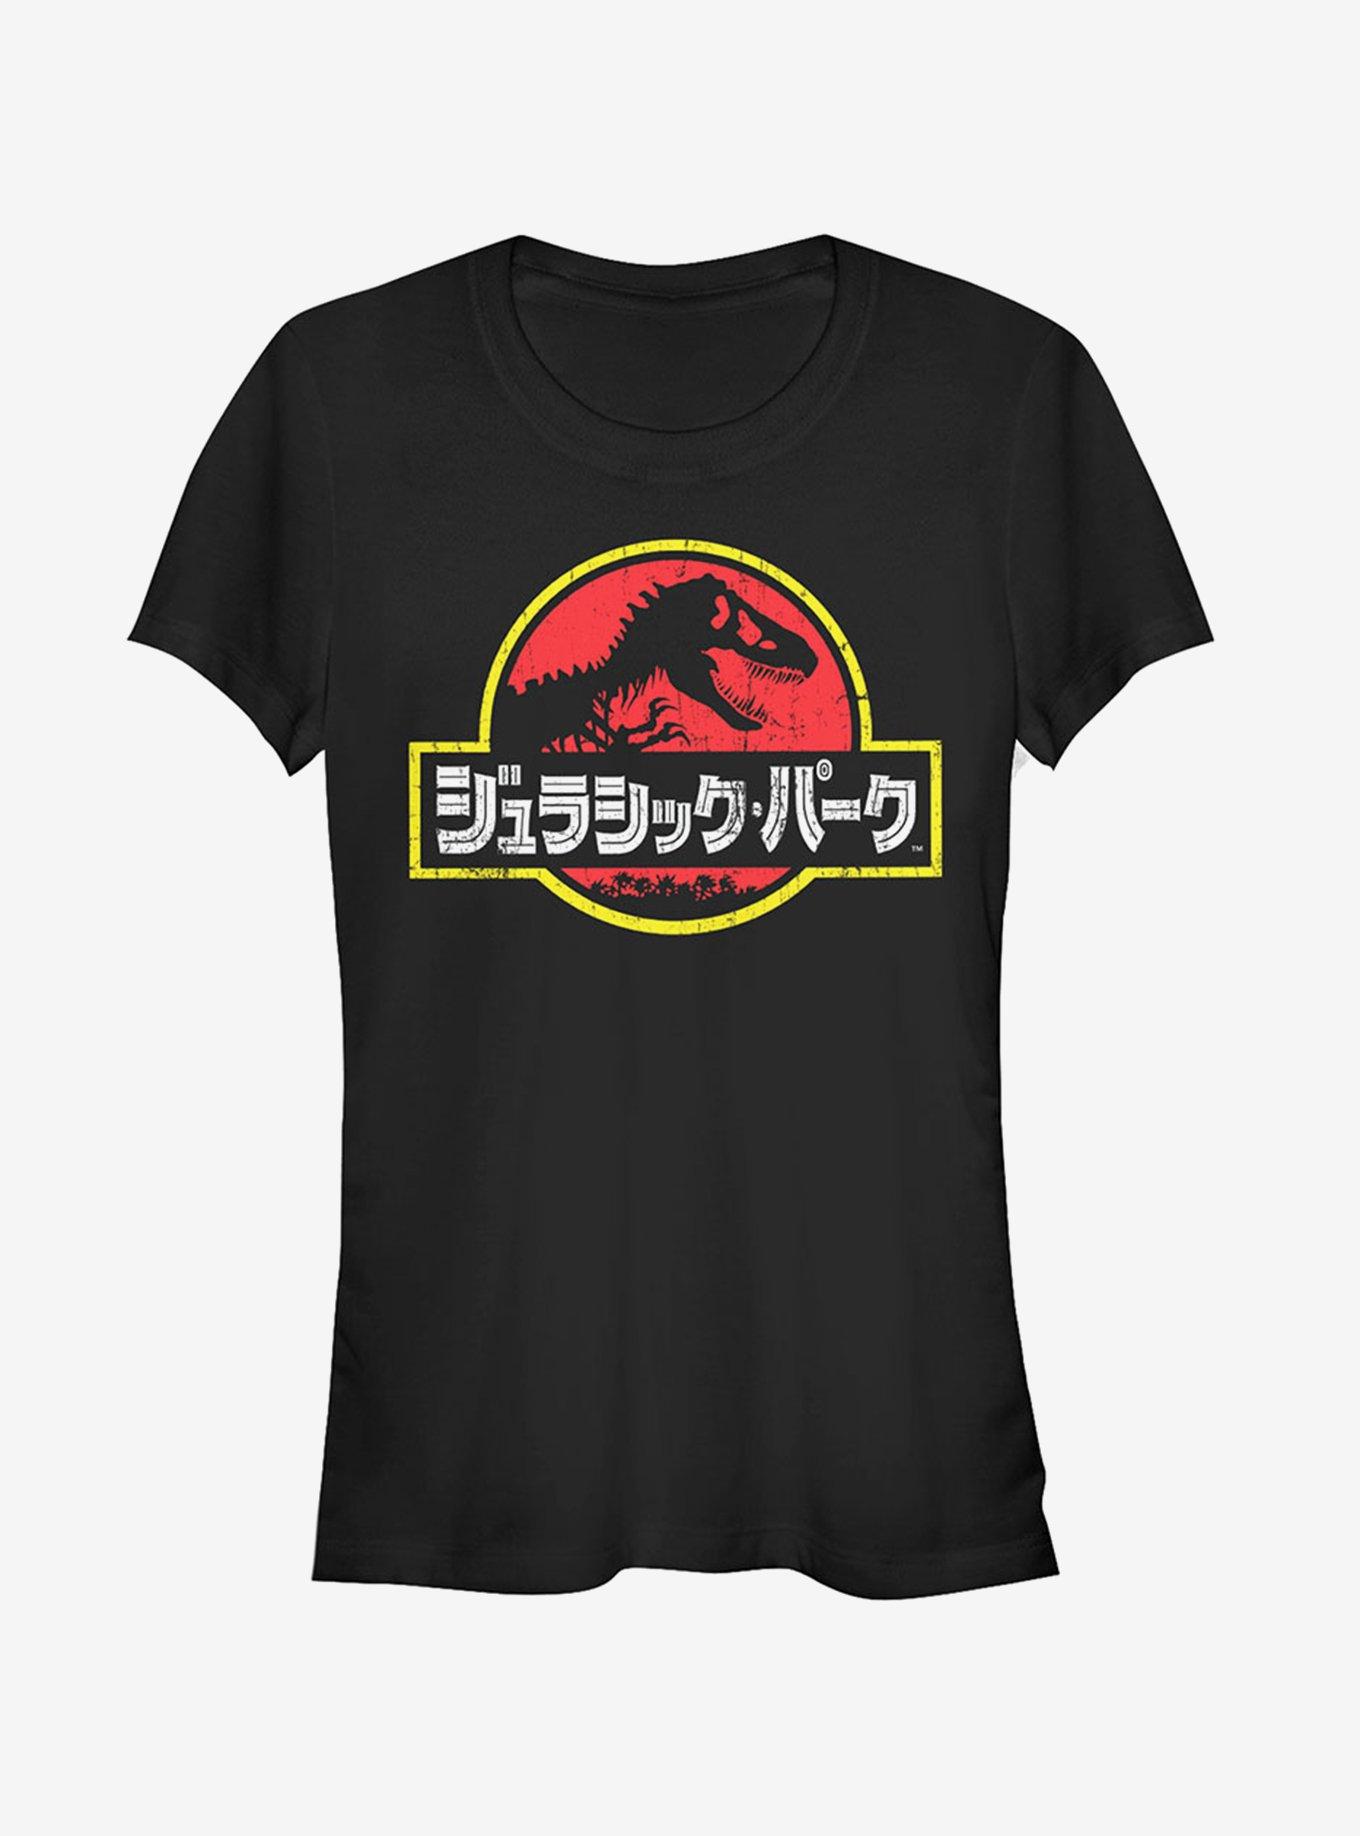 Jurassic Park Japanese Text Logo Girls T-Shirt, BLACK, hi-res